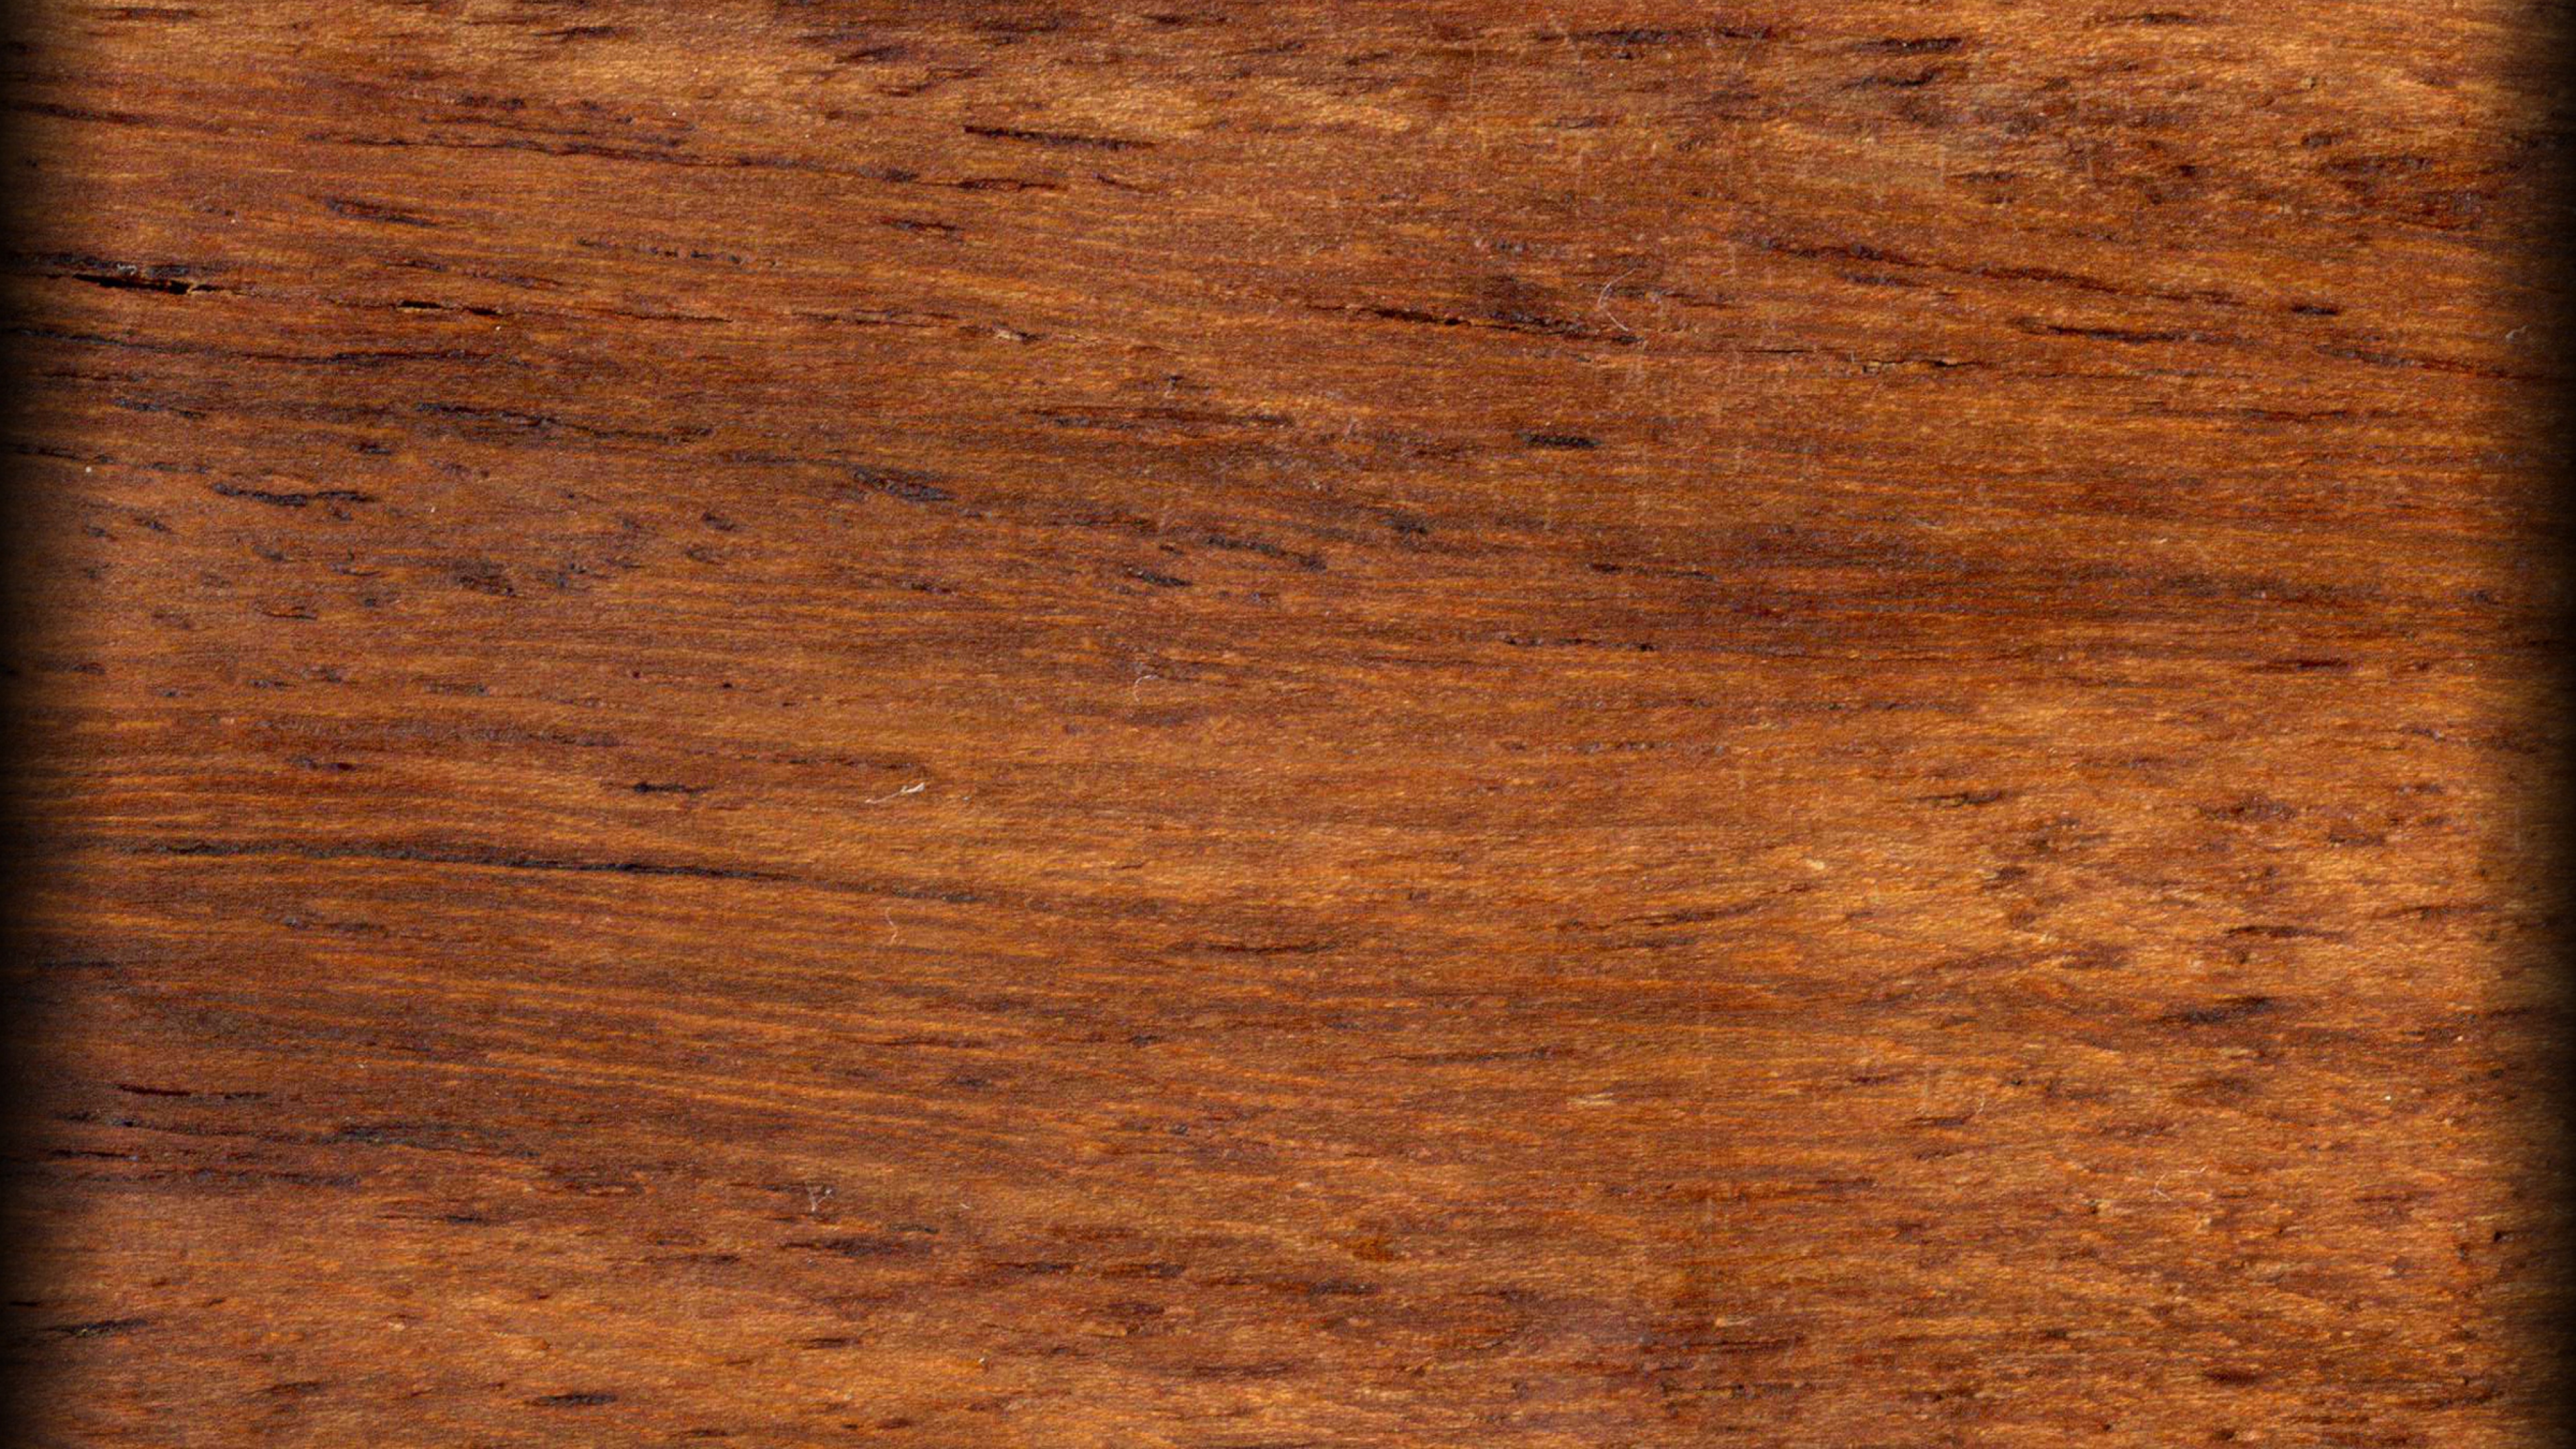 holz wallpaper,madera,mancha de madera,marrón,suelos de madera,madera dura